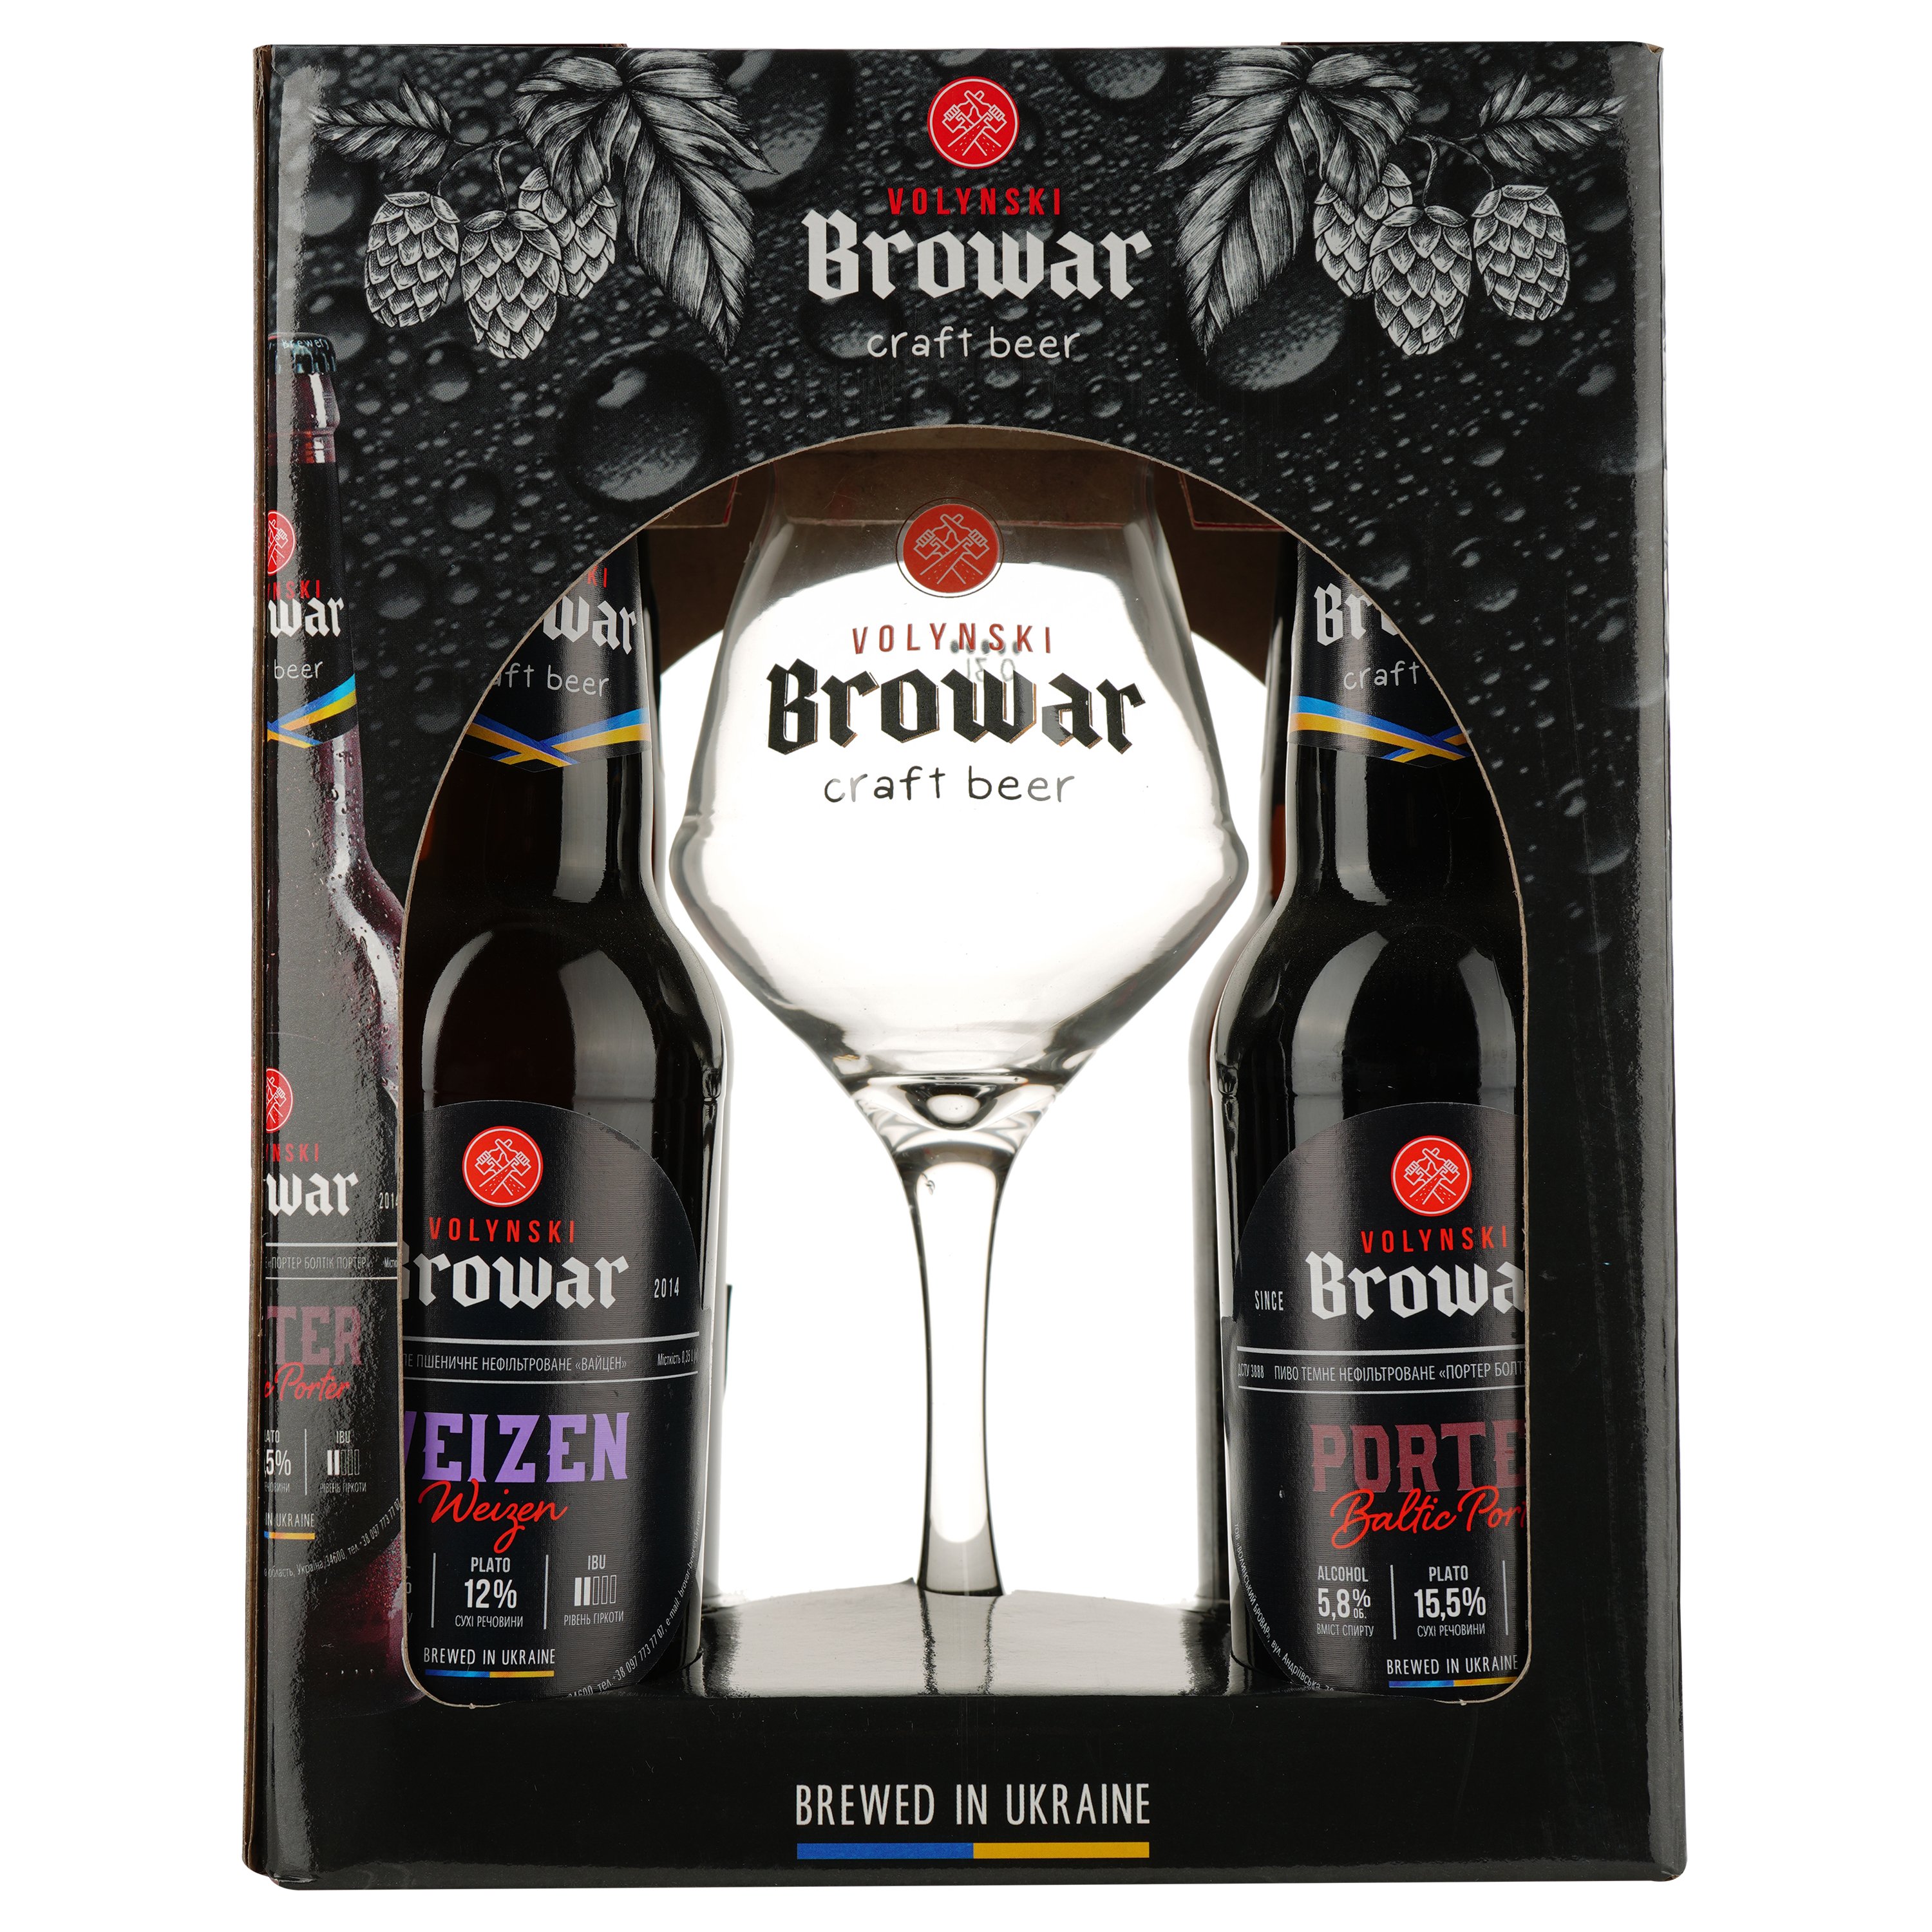 Подарочный набор пива Volynski Browar, 3,8-5,8%, 1,4 л (4 шт. по 0,35 л) + Бокал Somelier, 0,4 л - фото 1